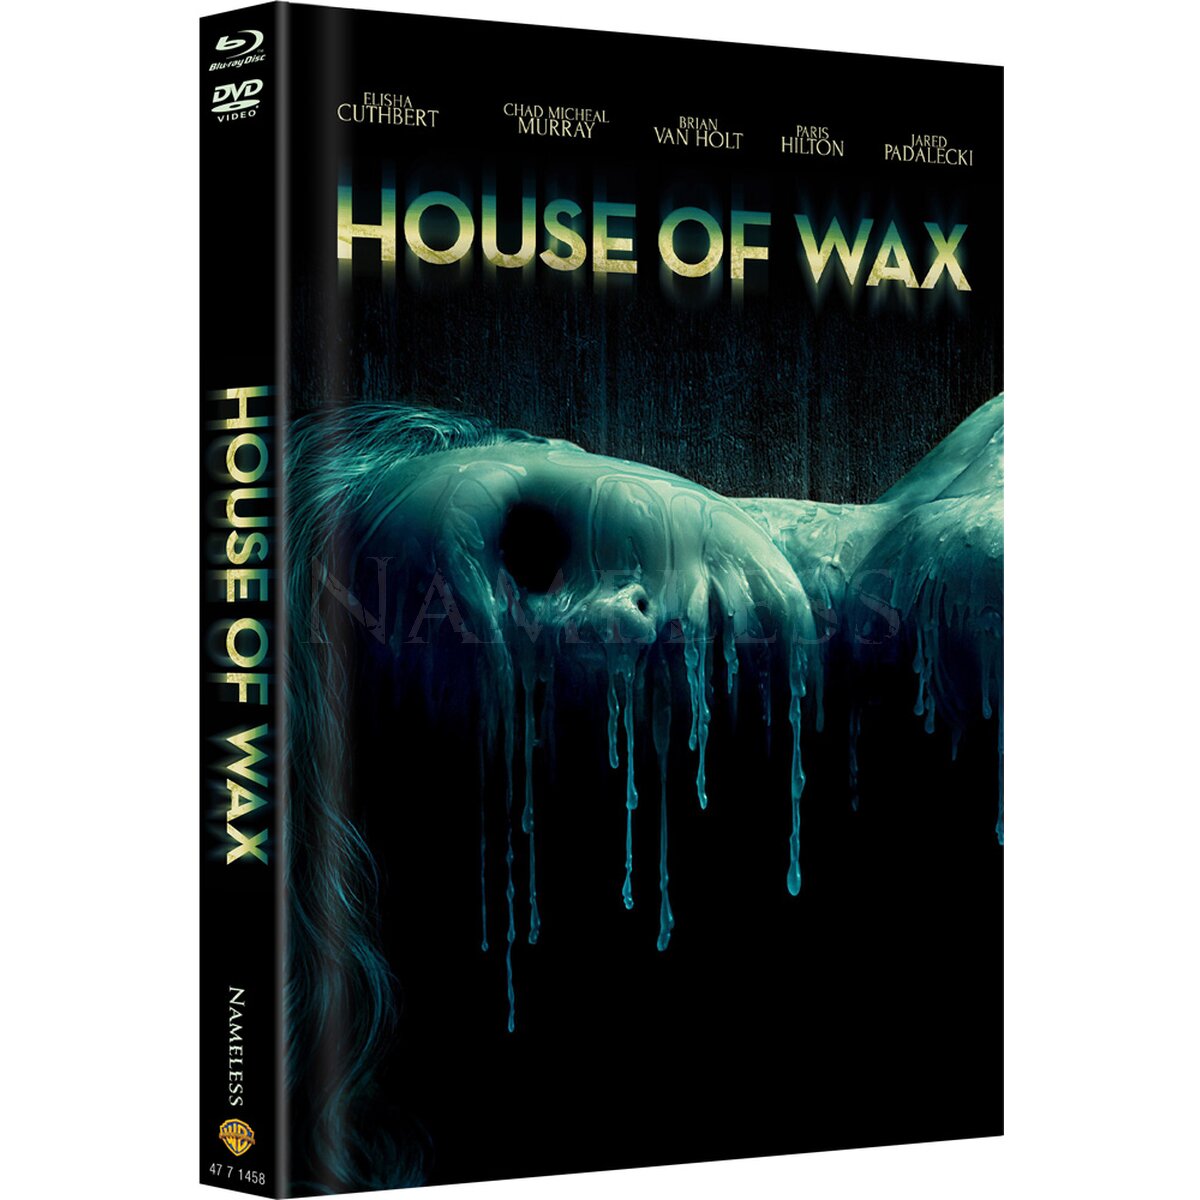 HOUSE OF WAX – COVER A – ORIGINAL